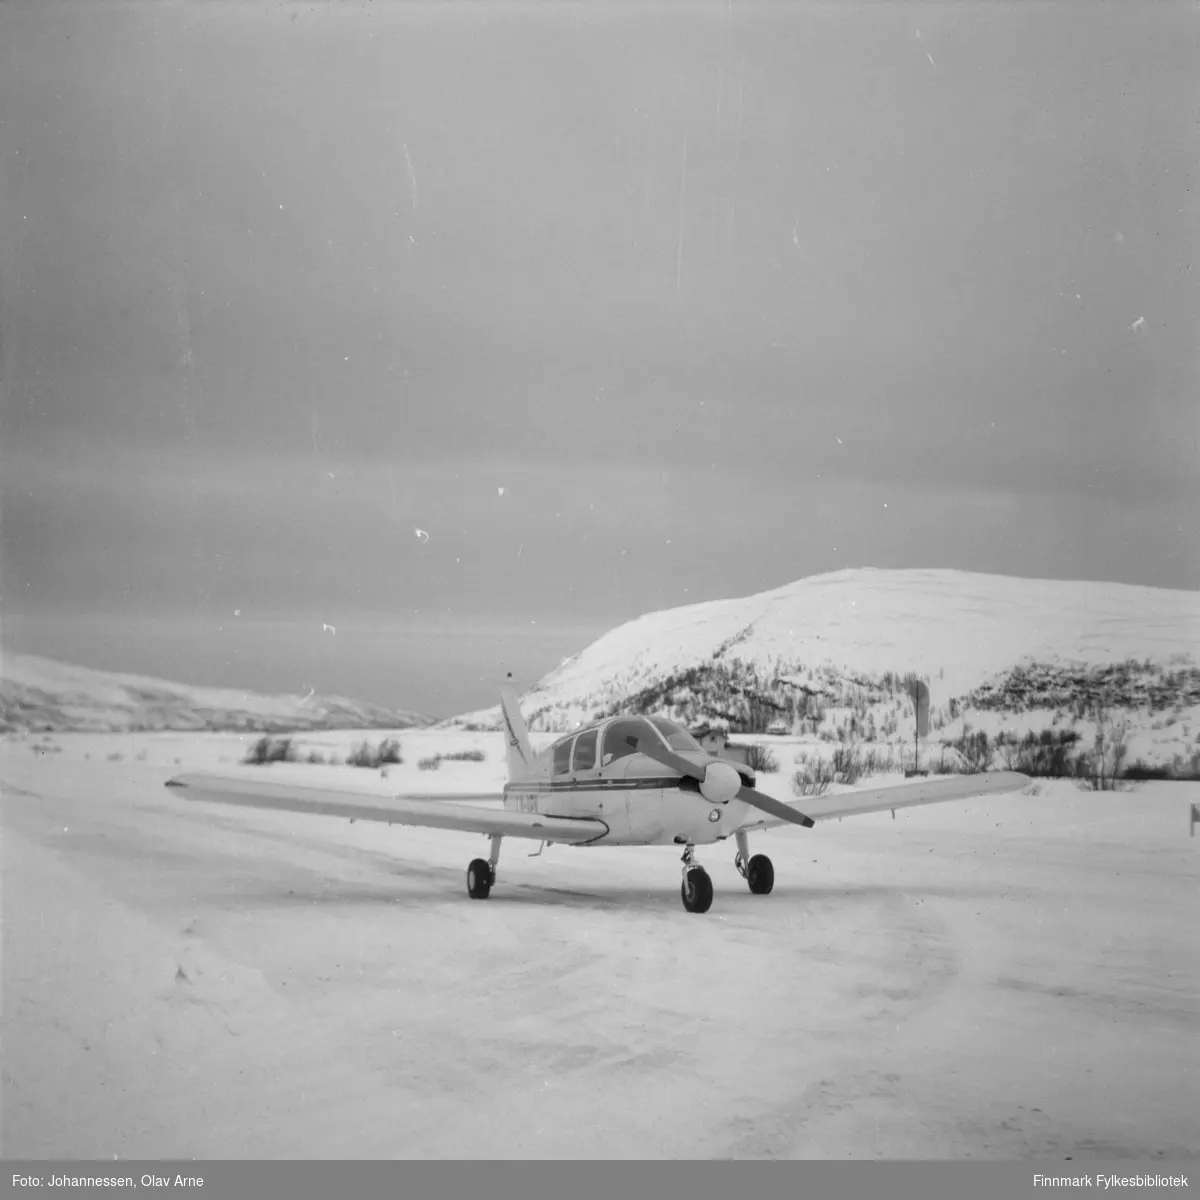 Ivar Bryggari i sitt Piper Cub fly på den private flyplassen i Båtsfjorddalen.

Flyet kan være modell Piper PA-28-180 Cherokee D. Flyet har ID nummer LN-HHH skrevet på venstre side (synes ikke på foto)

Flyet er omringet av sne og man ser vinterlandskap i bakgrunnen 